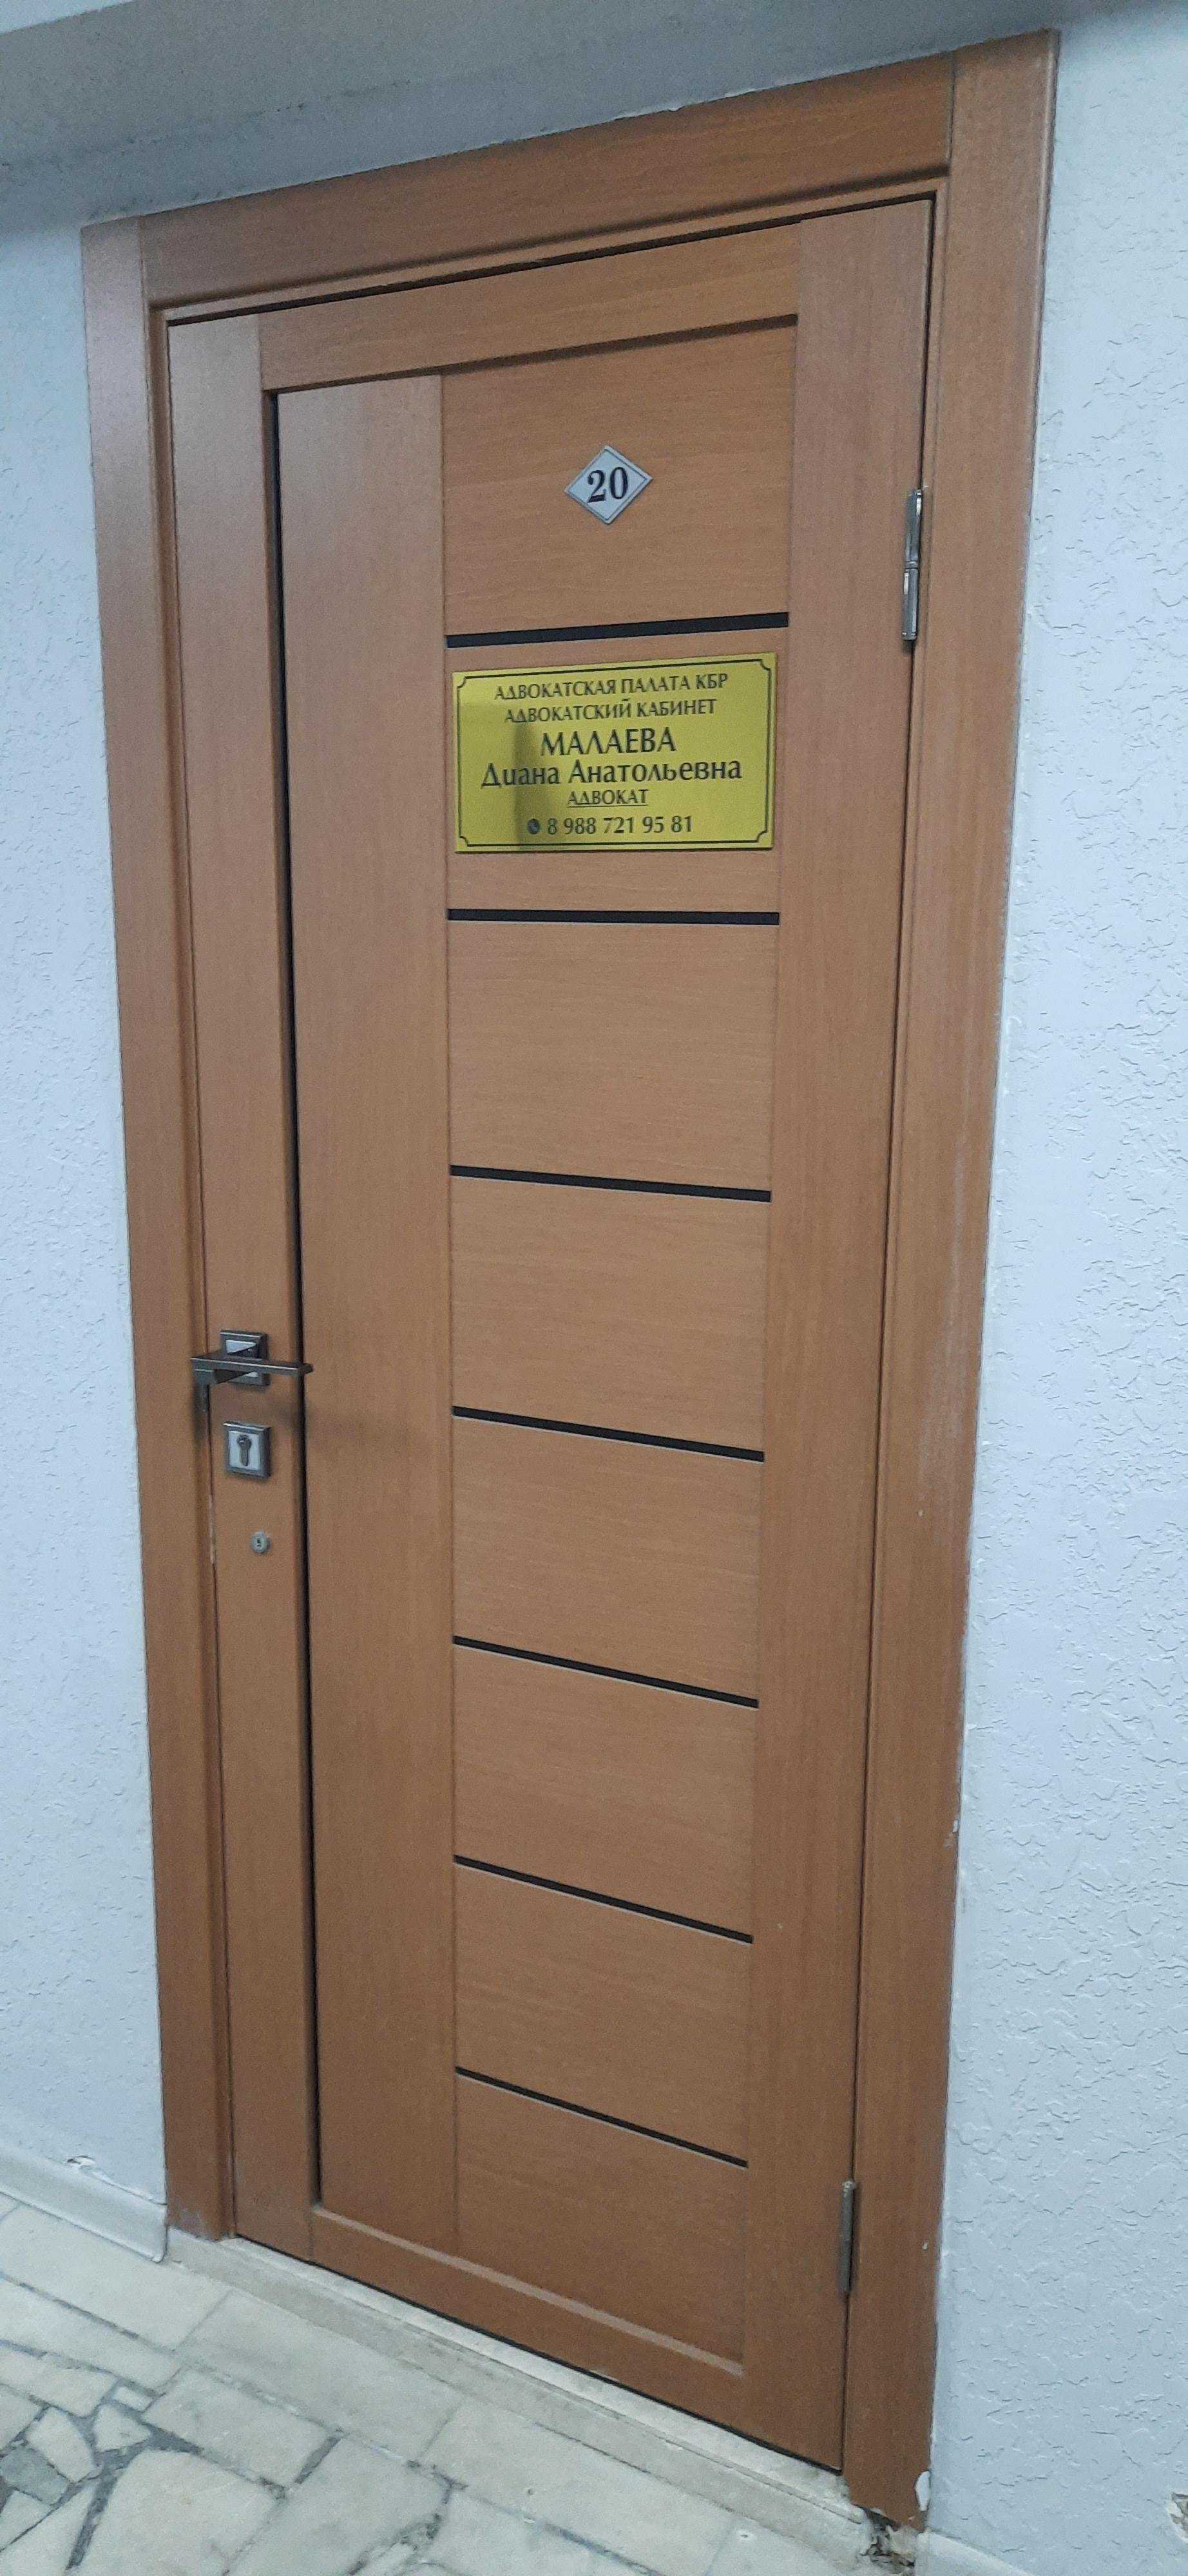 Адвокатский кабинет Малаевой Д.А. фото 1